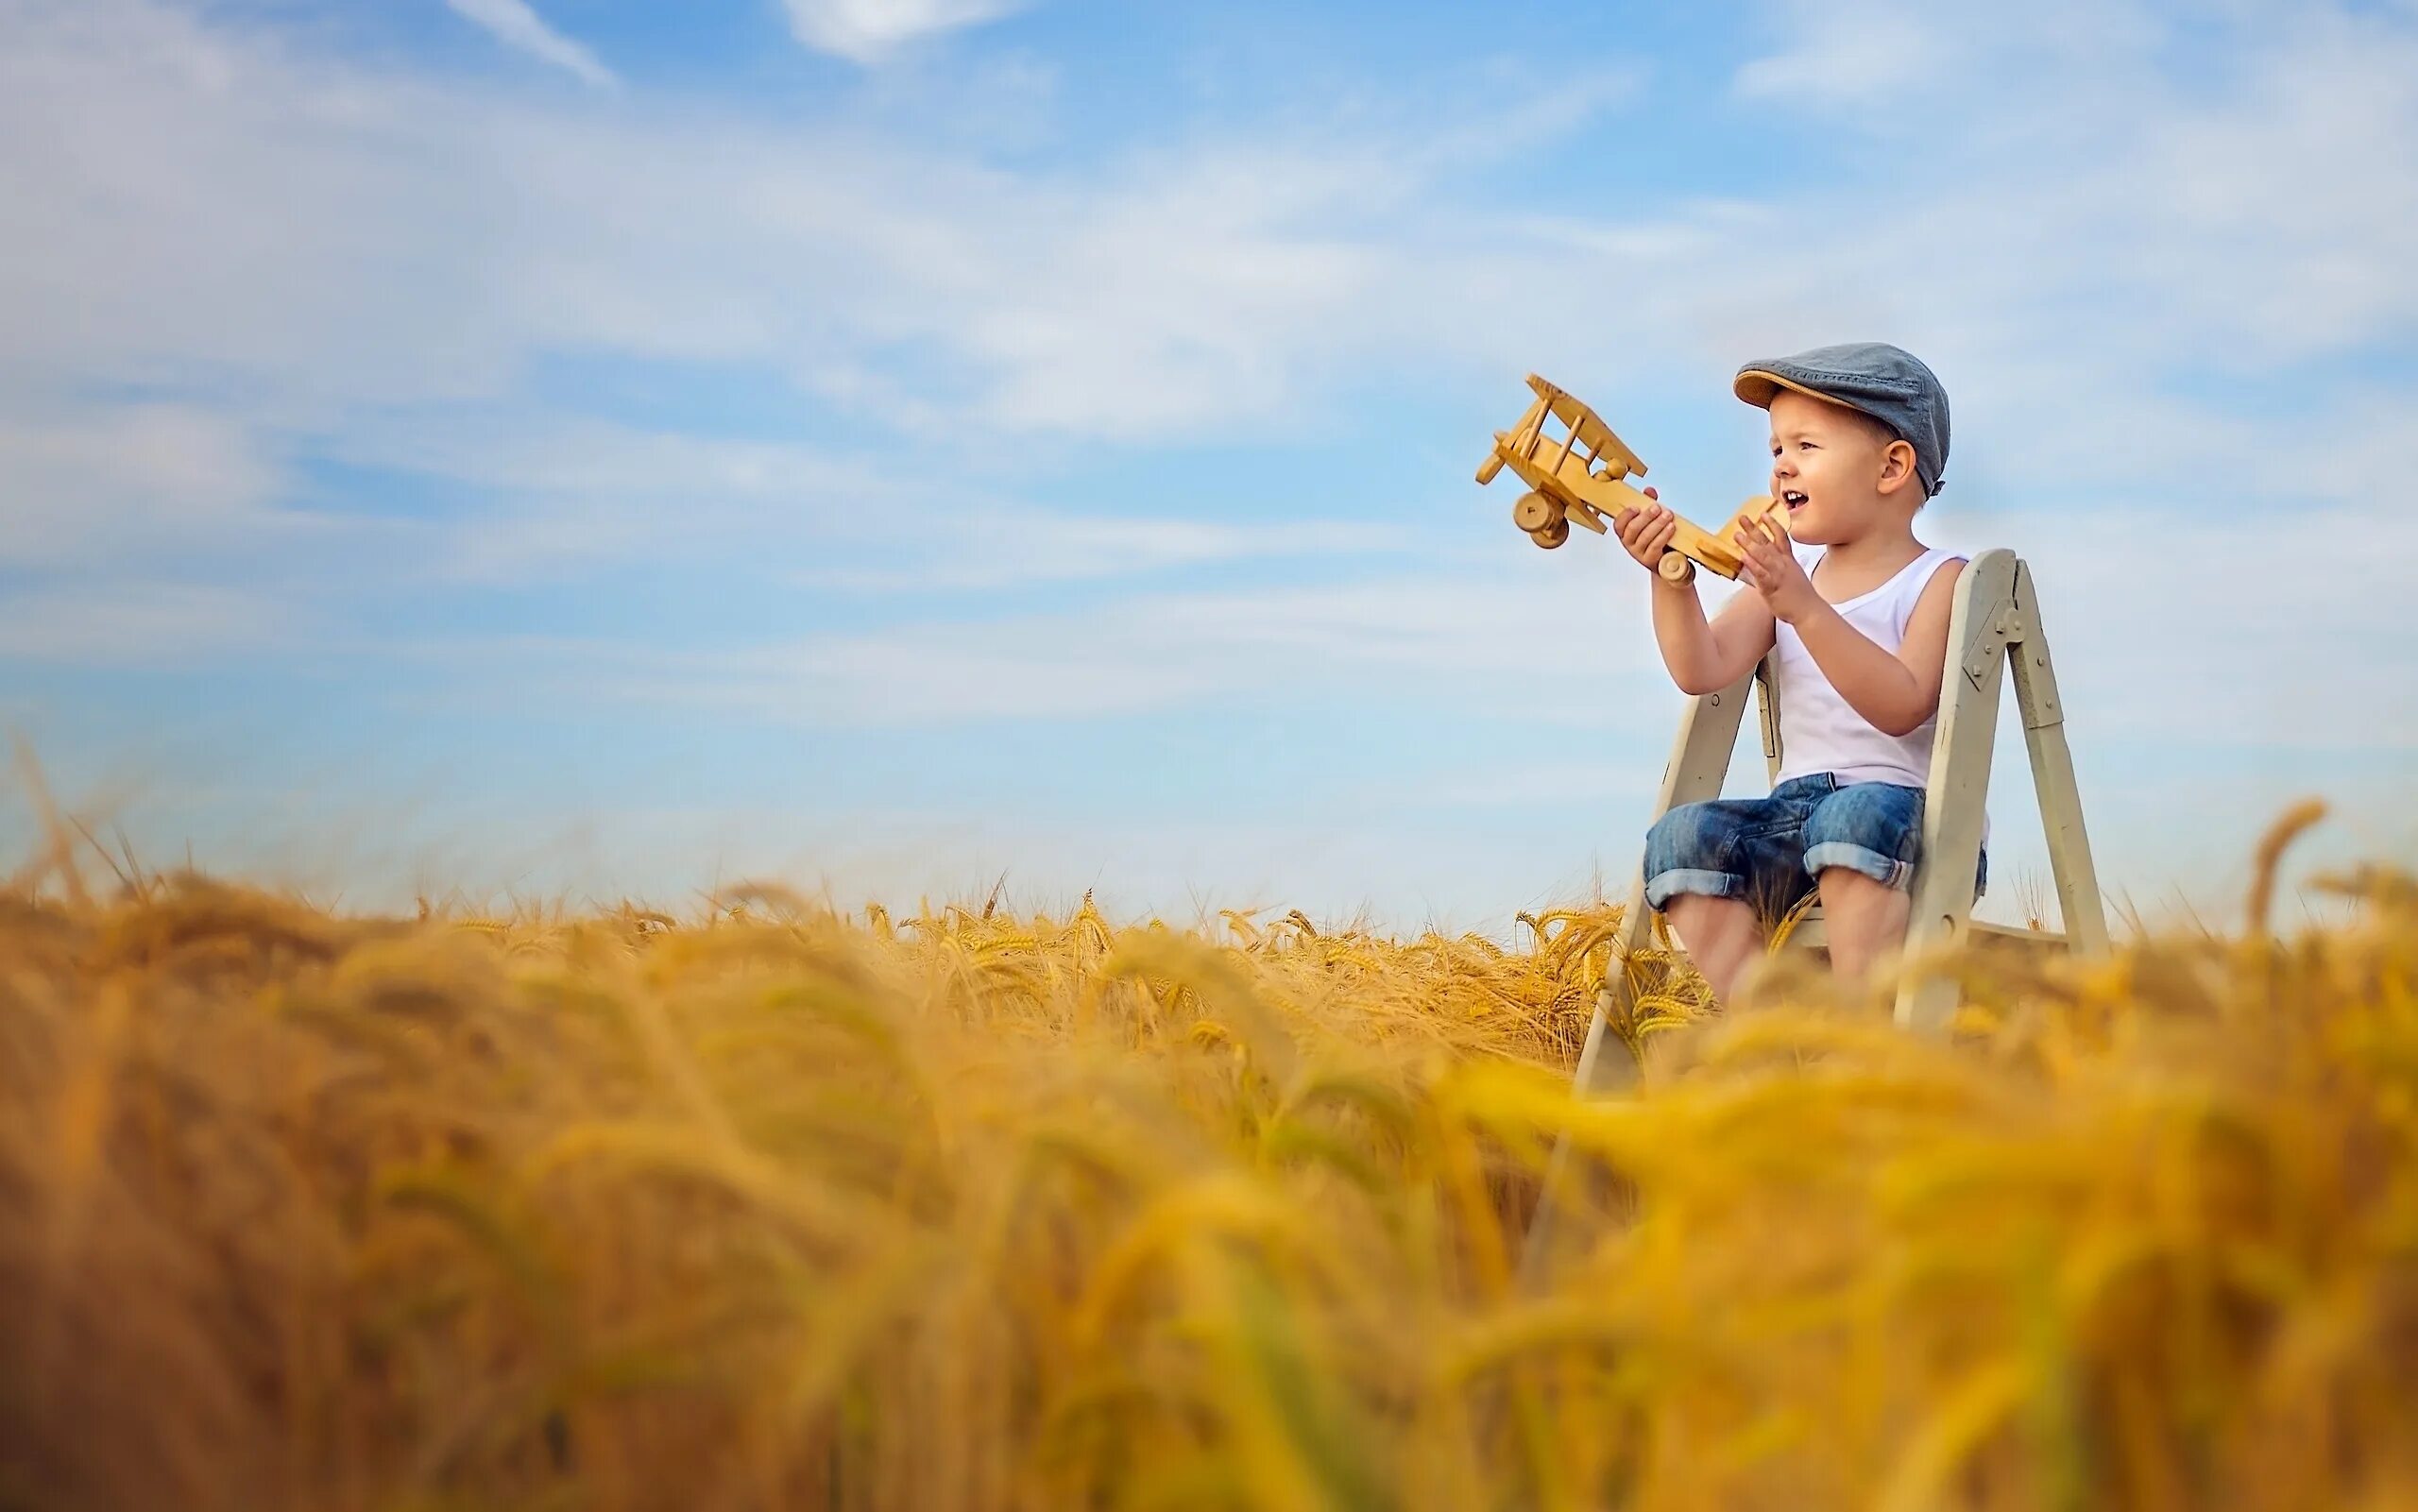 Field children. Дети в пшеничном поле. Фотосессия в поле мальчик. Фотосессия мальчиков в поле пшеницы. Мальчик в поле с самолетиком.